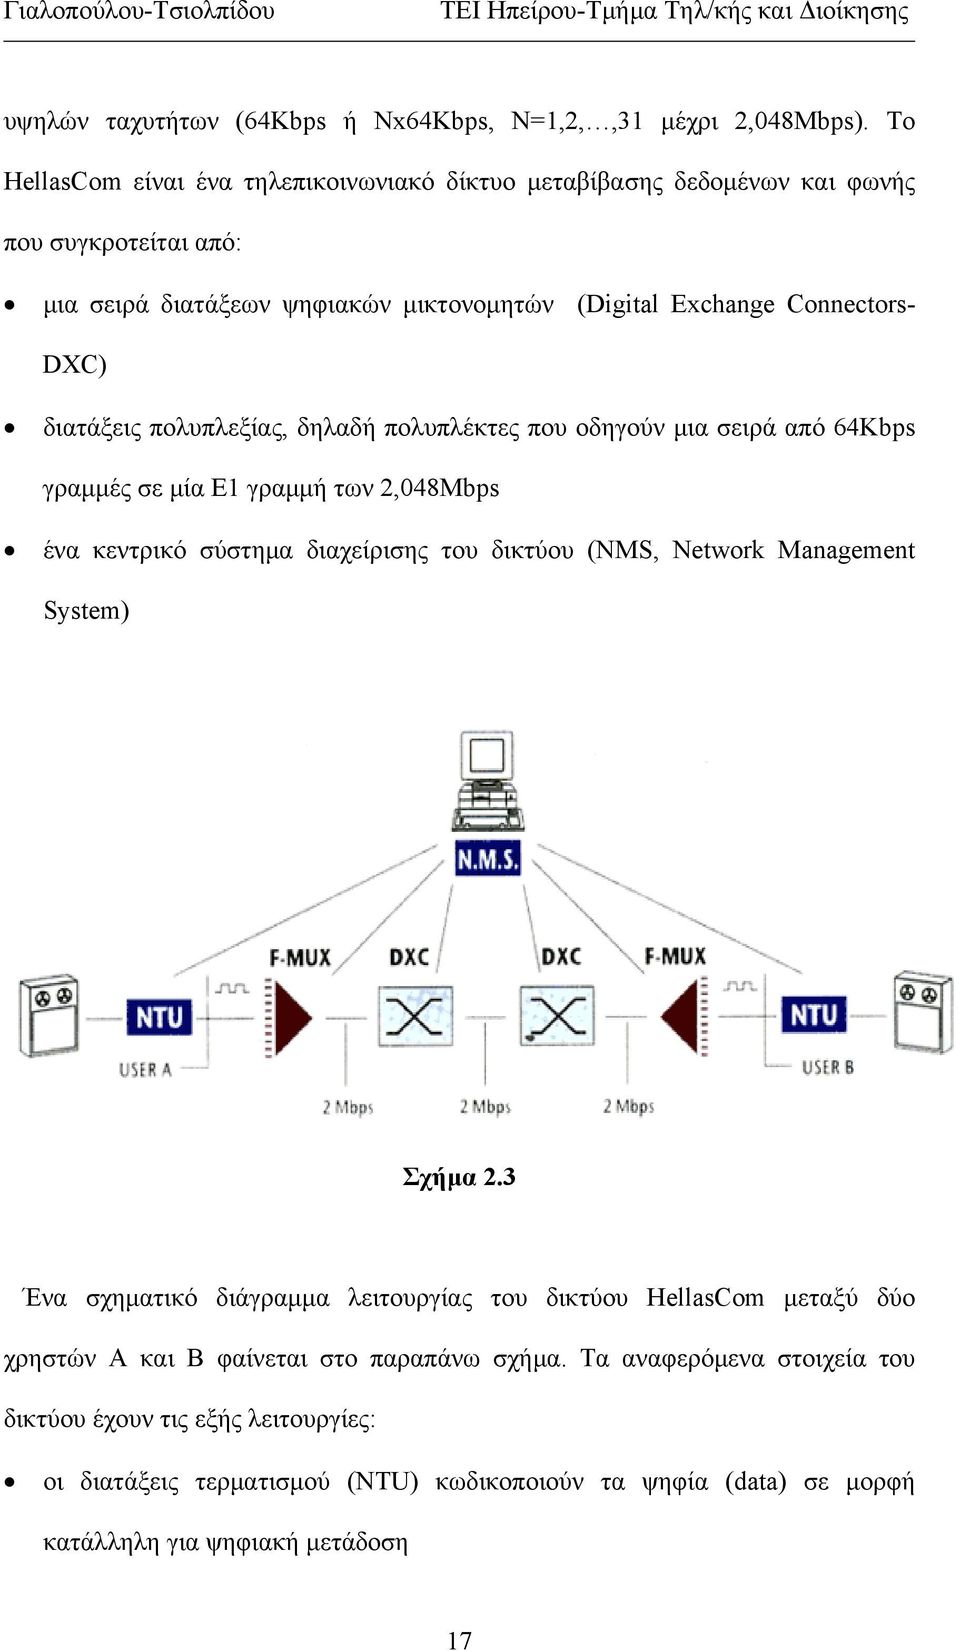 διατάξεις πολυπλεξίας, δηλαδή πολυπλέκτες που οδηγούν μια σειρά από 64Kbps γραμμές σε μία Ε1 γραμμή των 2,048Mbps ένα κεντρικό σύστημα διαχείρισης του δικτύου (NMS, Network